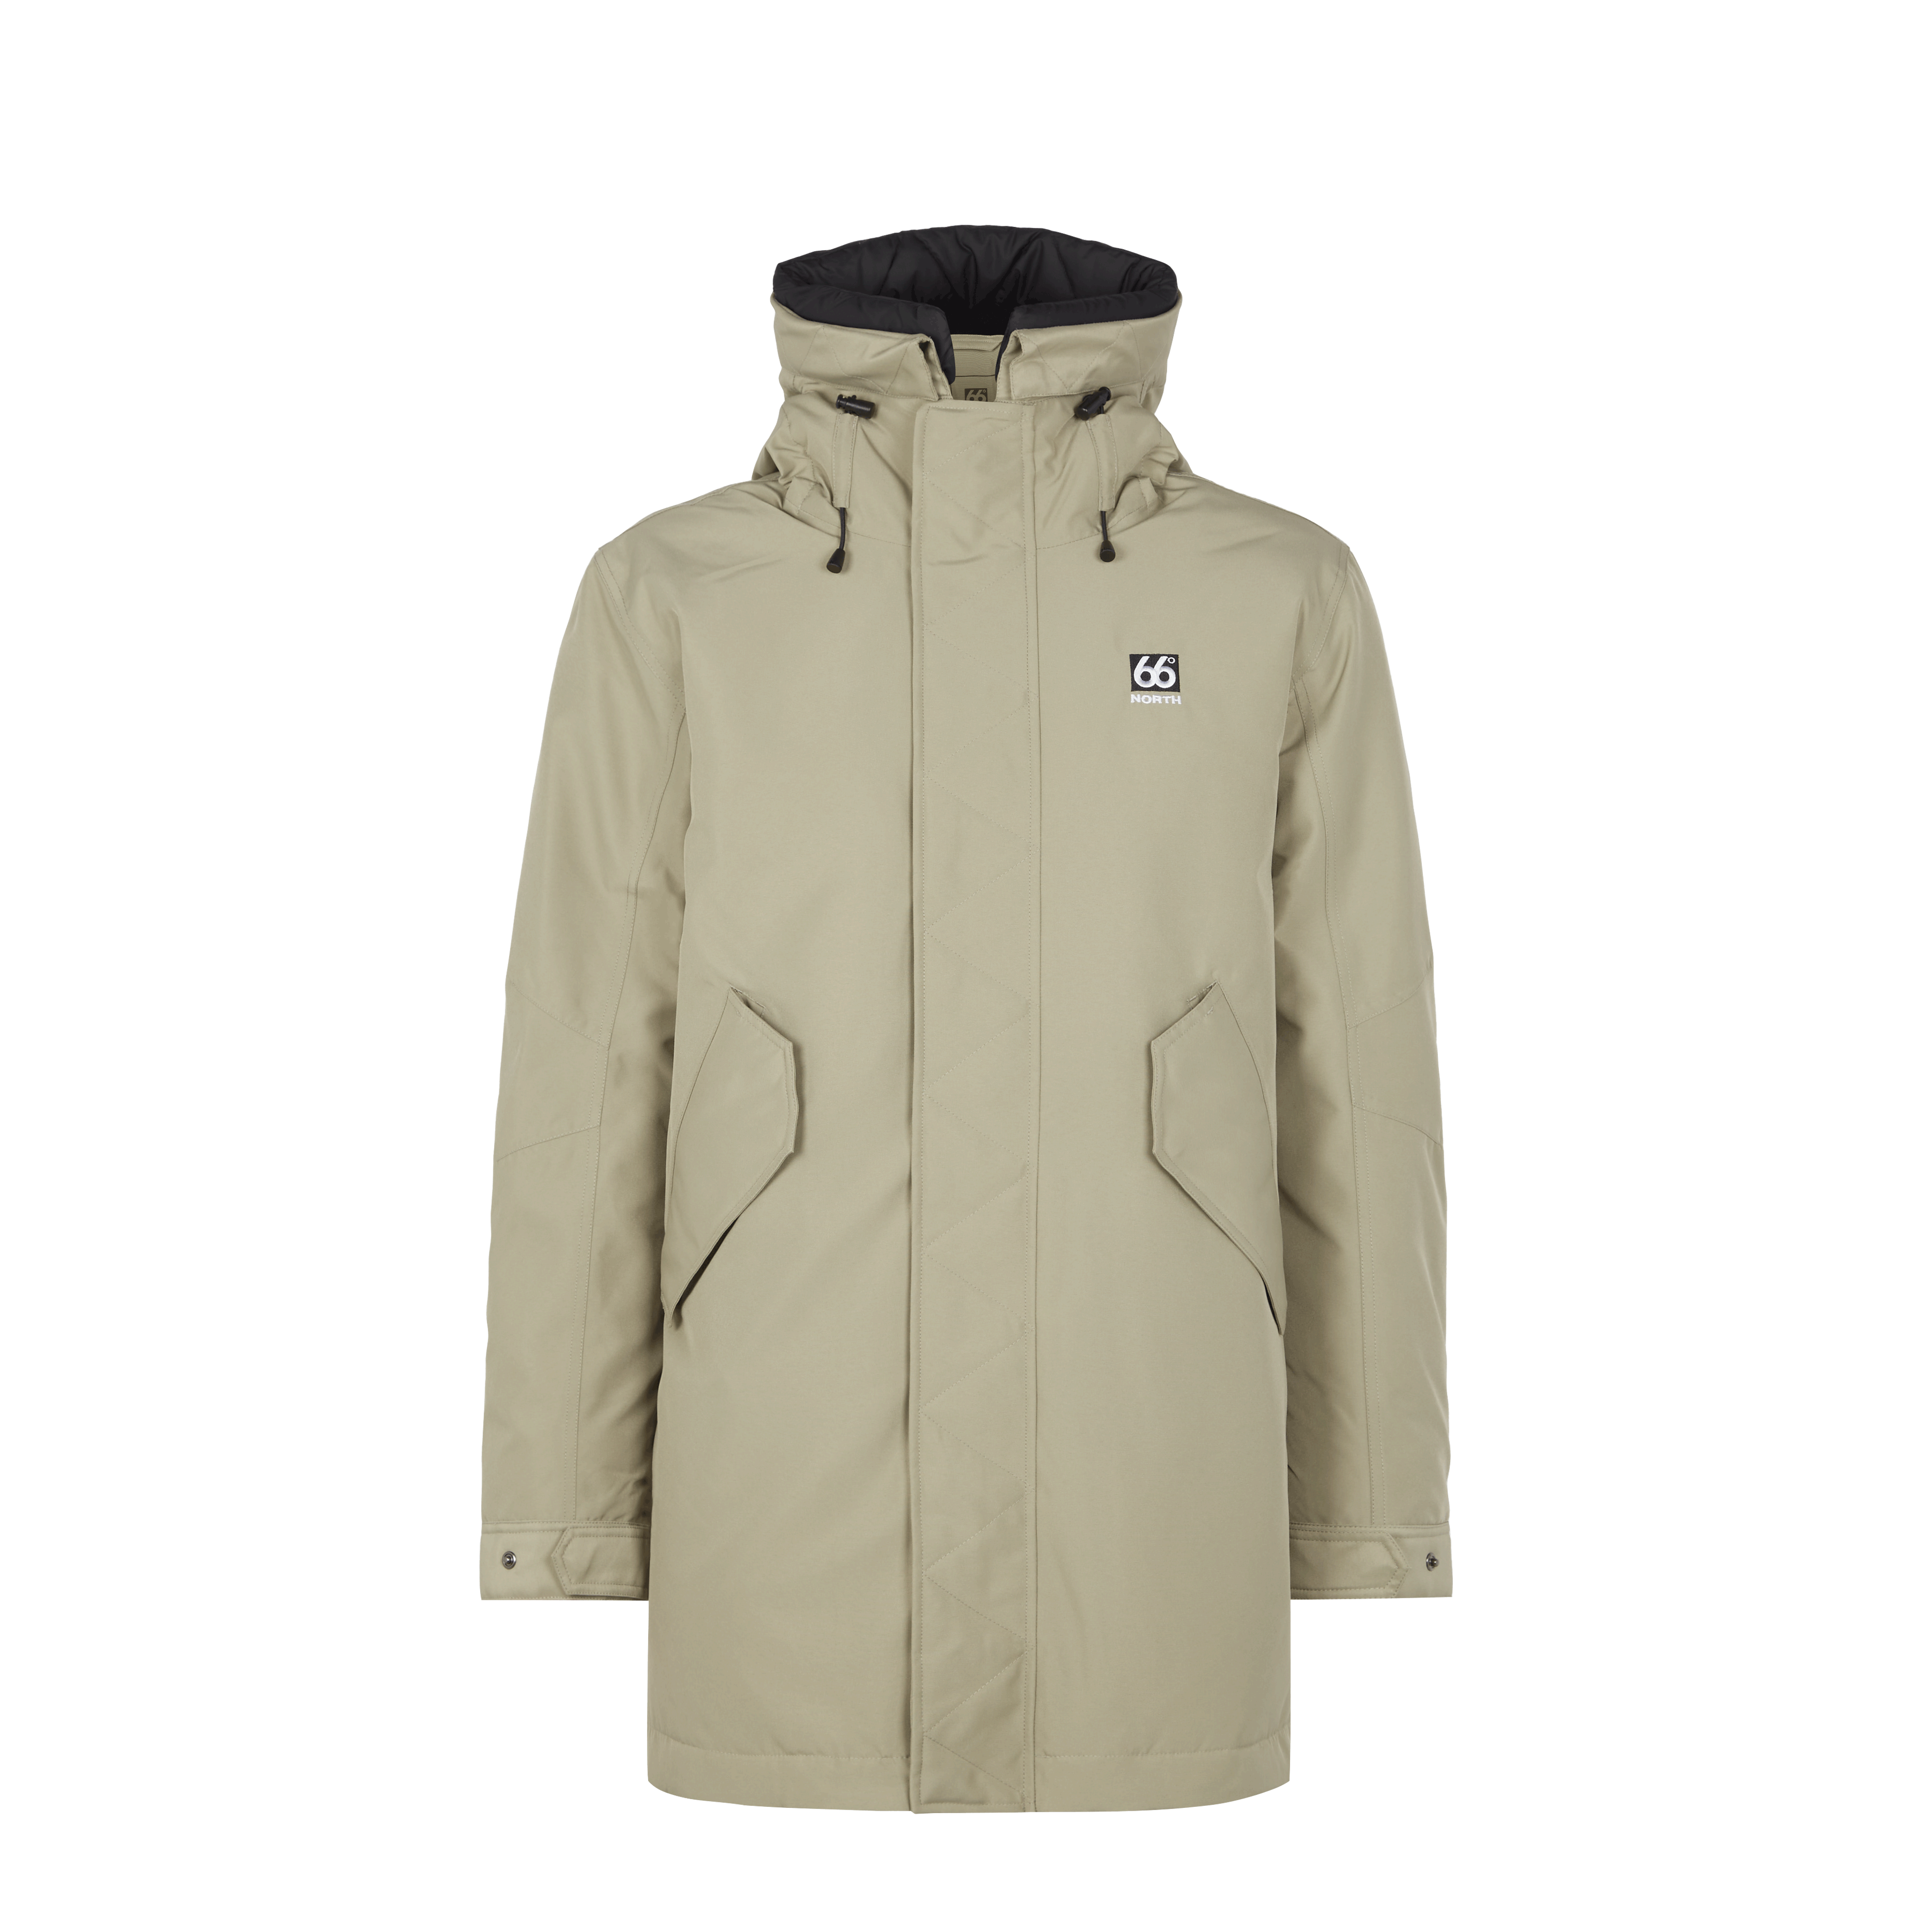 66 North Men's Hofsjökull Jackets & Coats